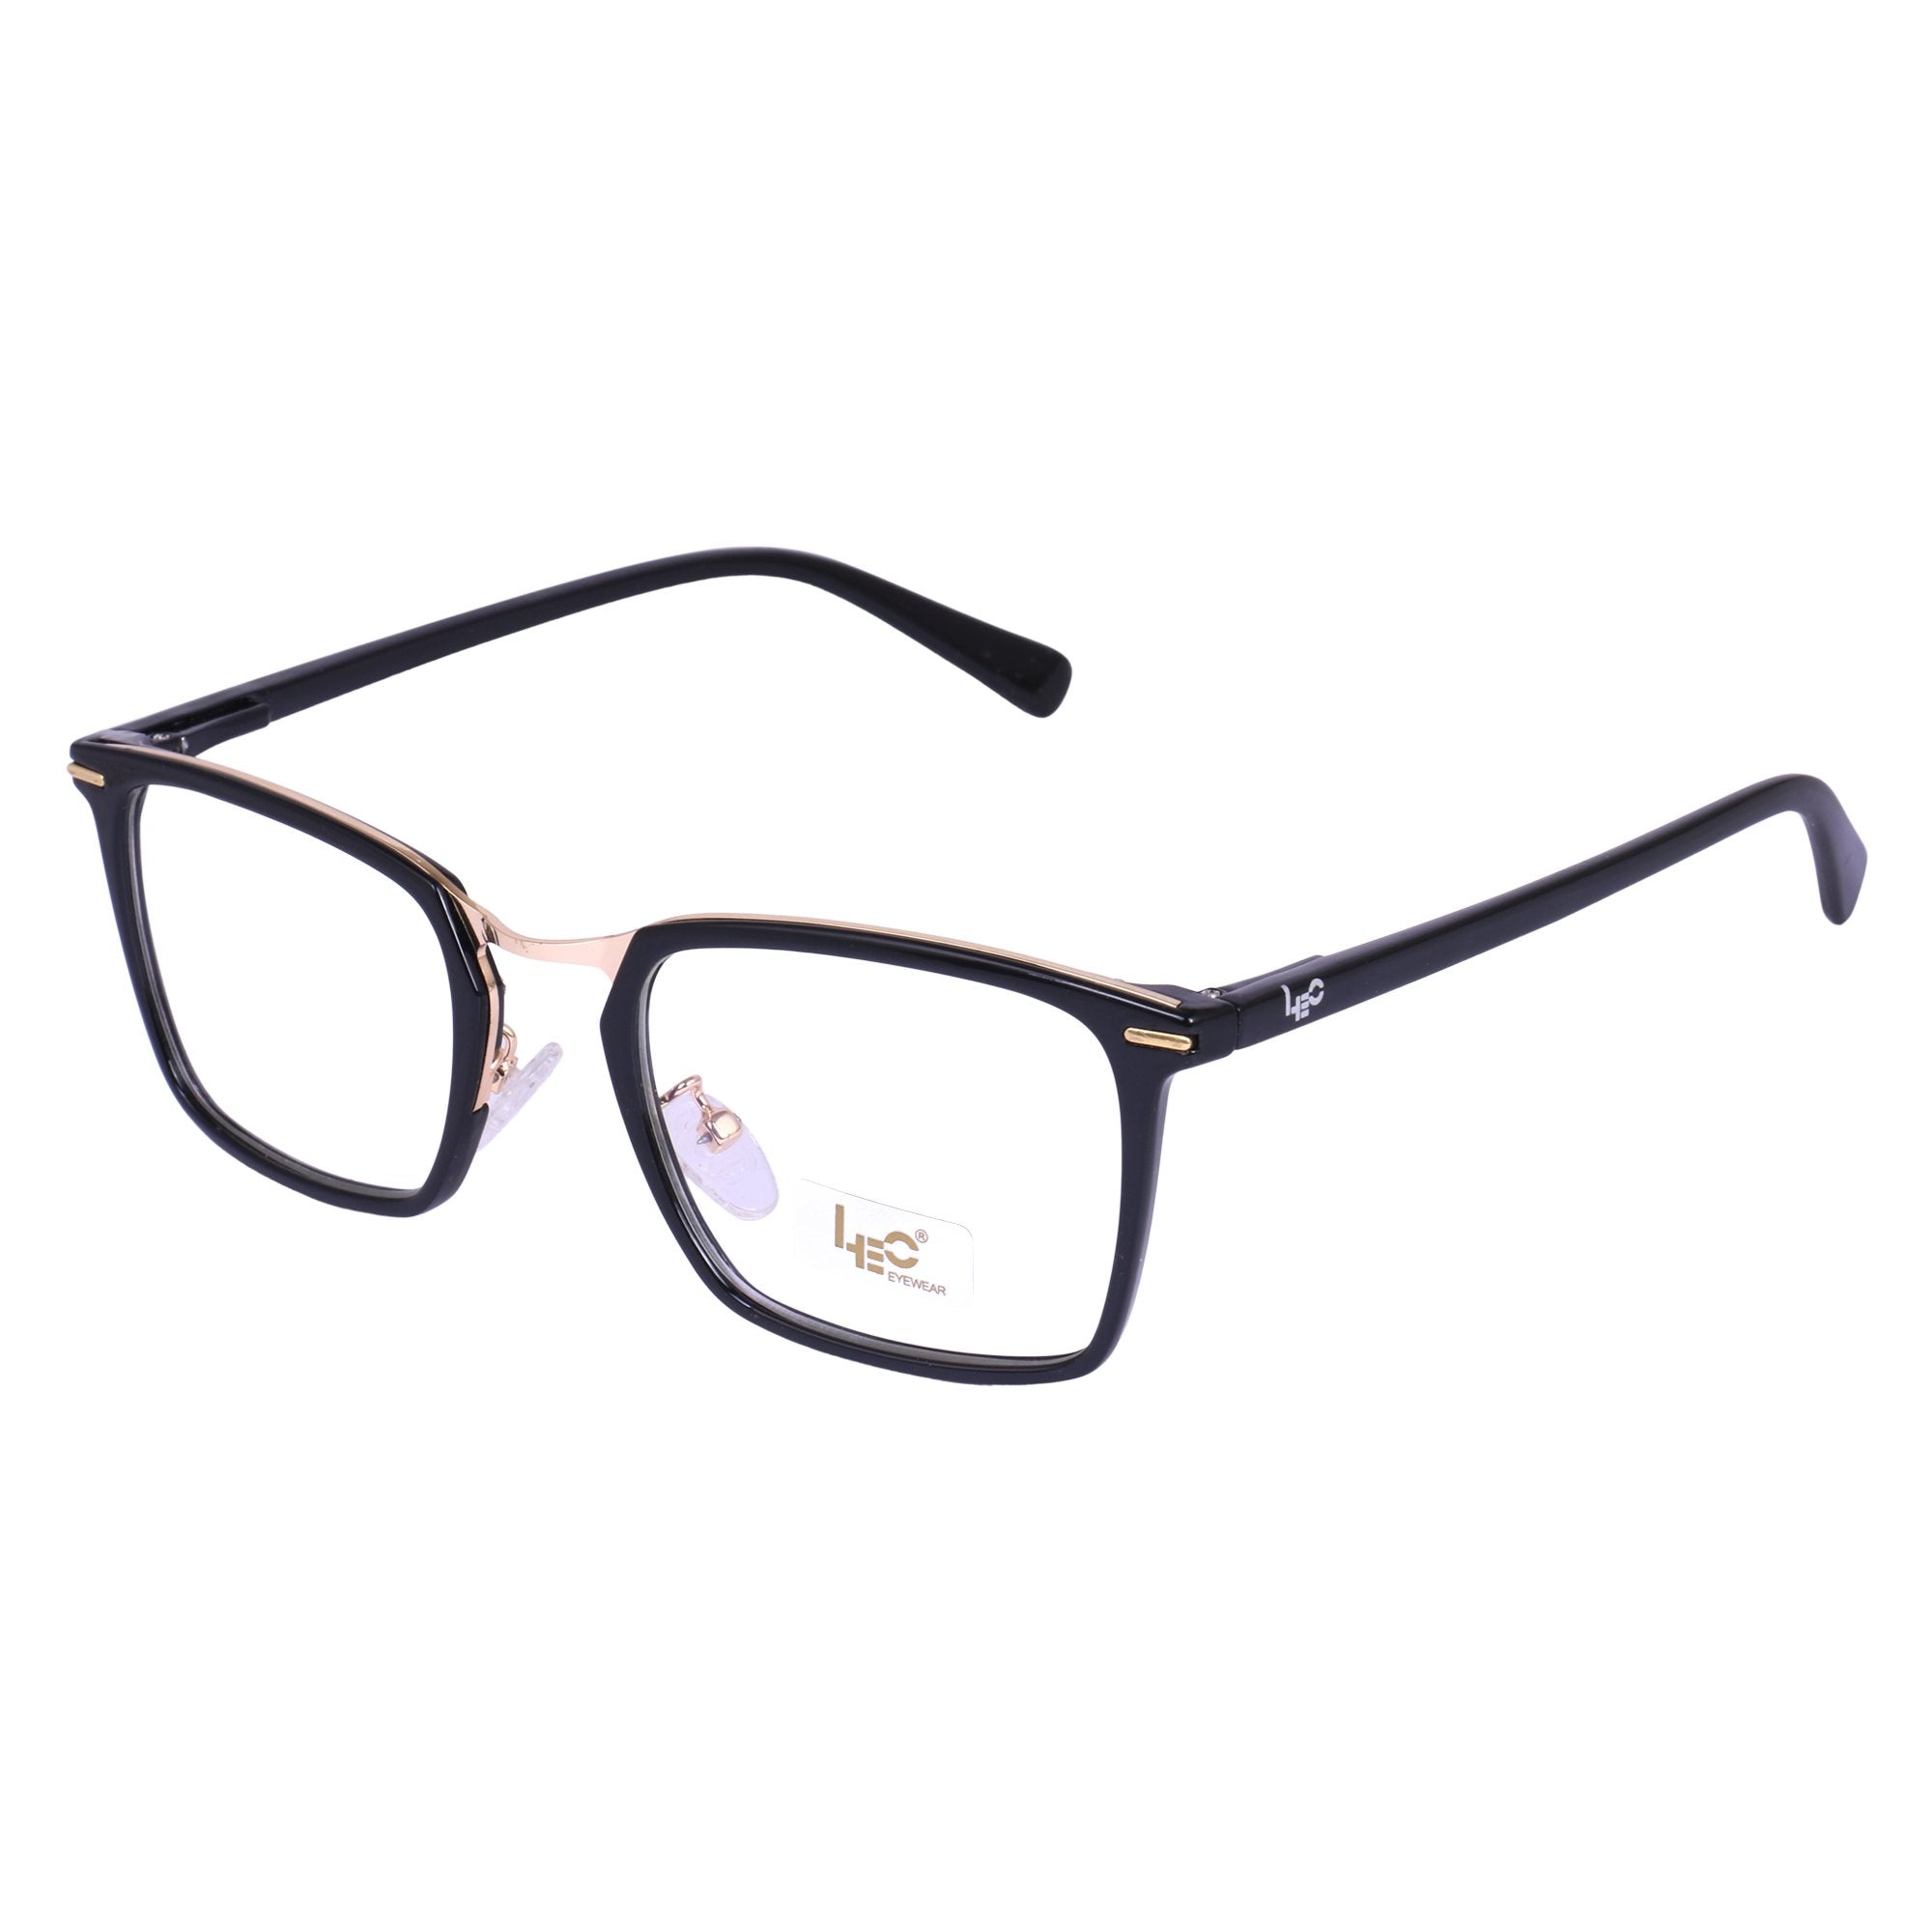 Black & Gold Square Rimmed Eyeglasses - L2755